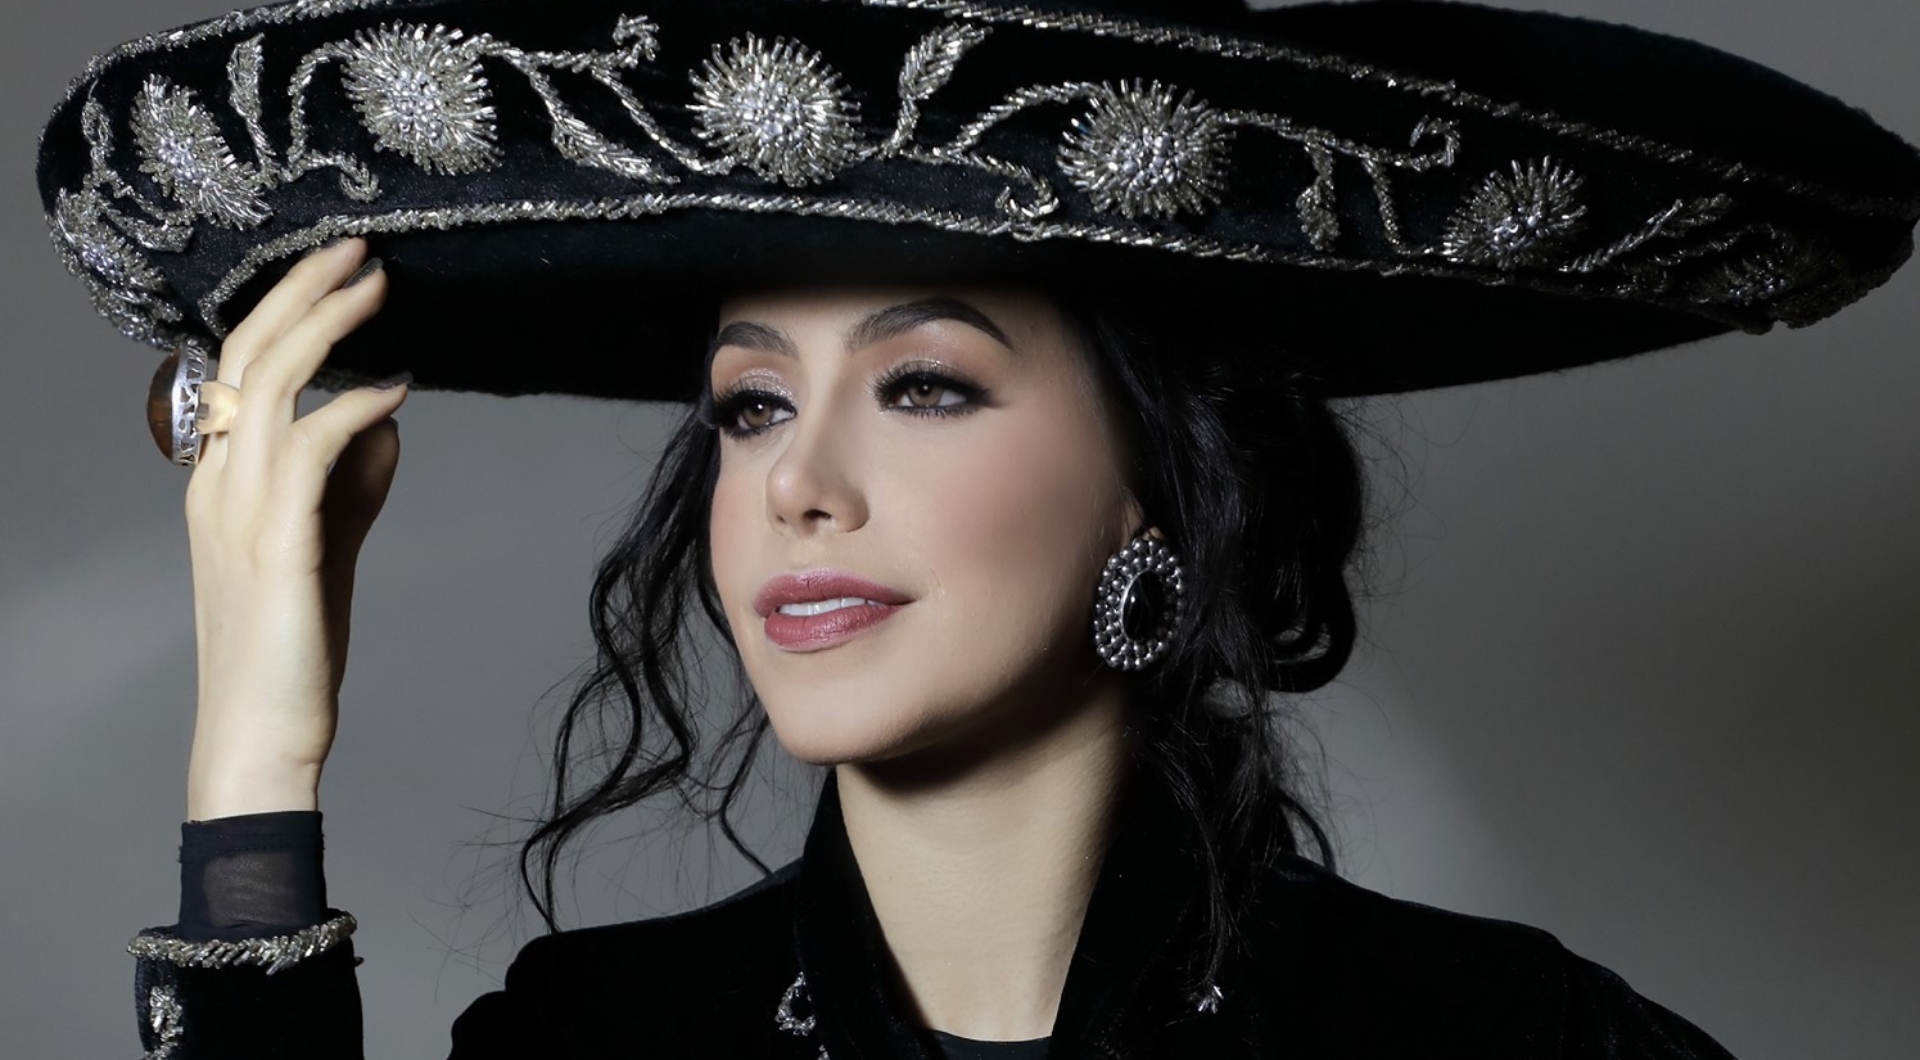 Yerma Lydia, meksykańska piosenkarka mariachi, była kobietą rzekomo zamordowaną przez mężczyznę w restauracji CDMX (fot.: Instagram /yrma_lydya)